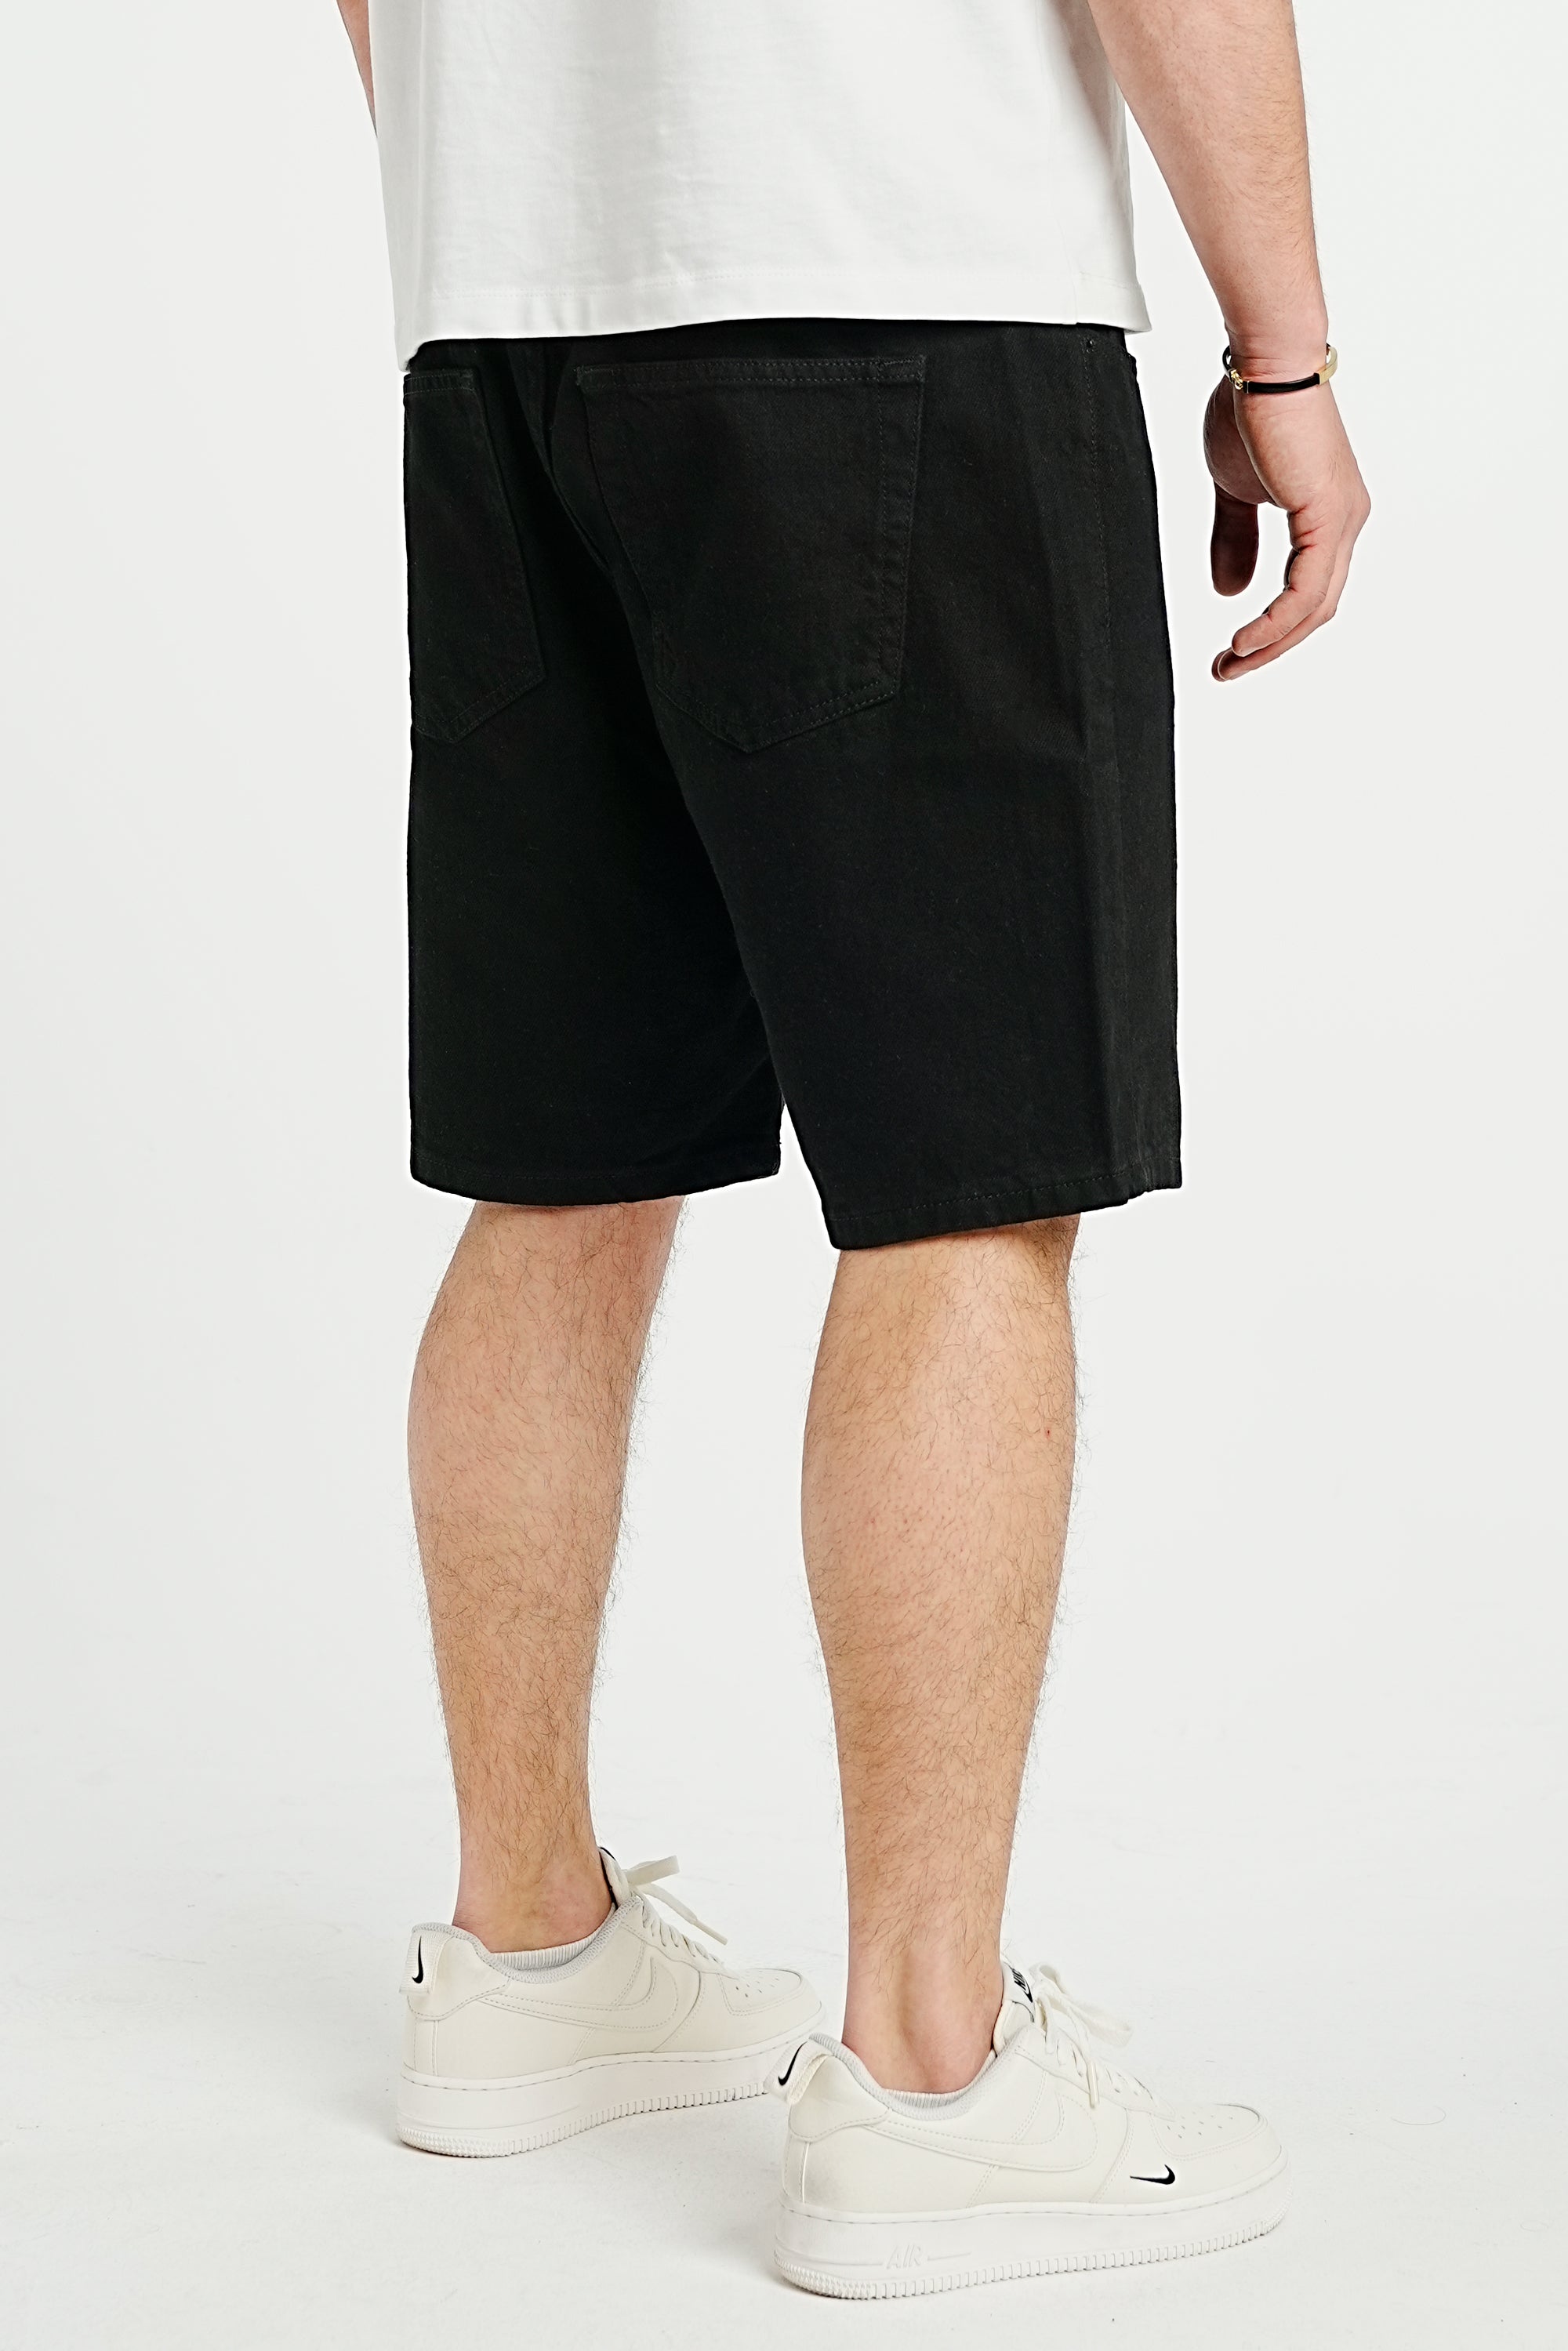 Premium Basic Black Denim Shorts - UNEFFECTED STUDIOS® - Shorts - 2Y PREMIUM